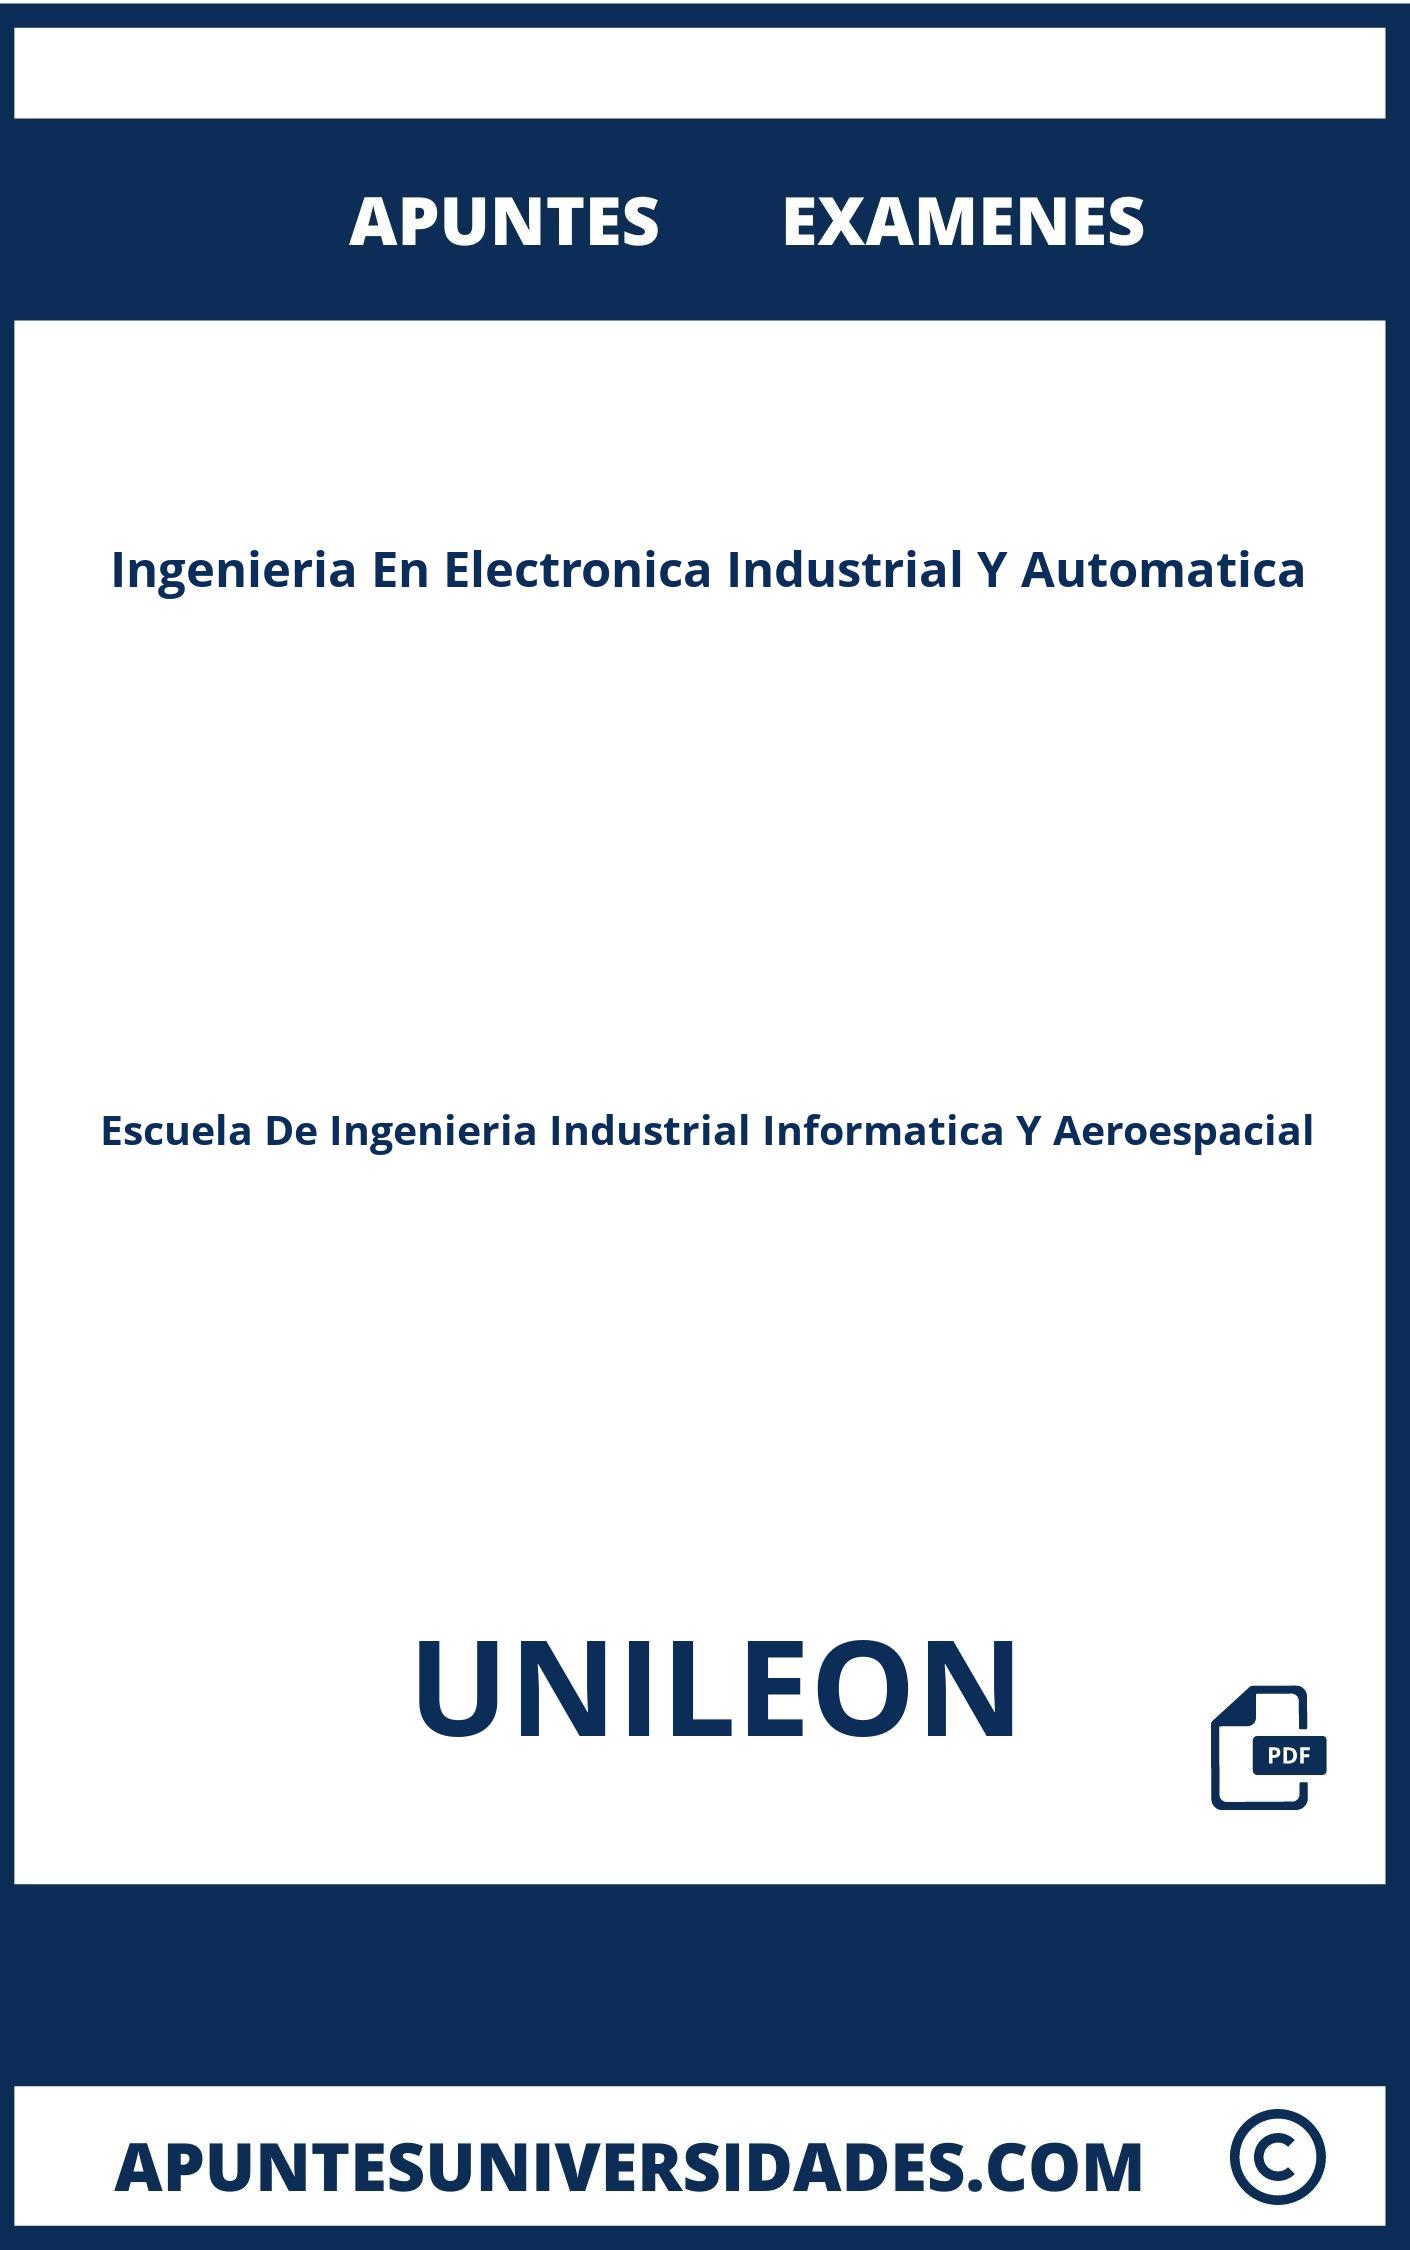 Apuntes Examenes Ingenieria En Electronica Industrial Y Automatica UNILEON